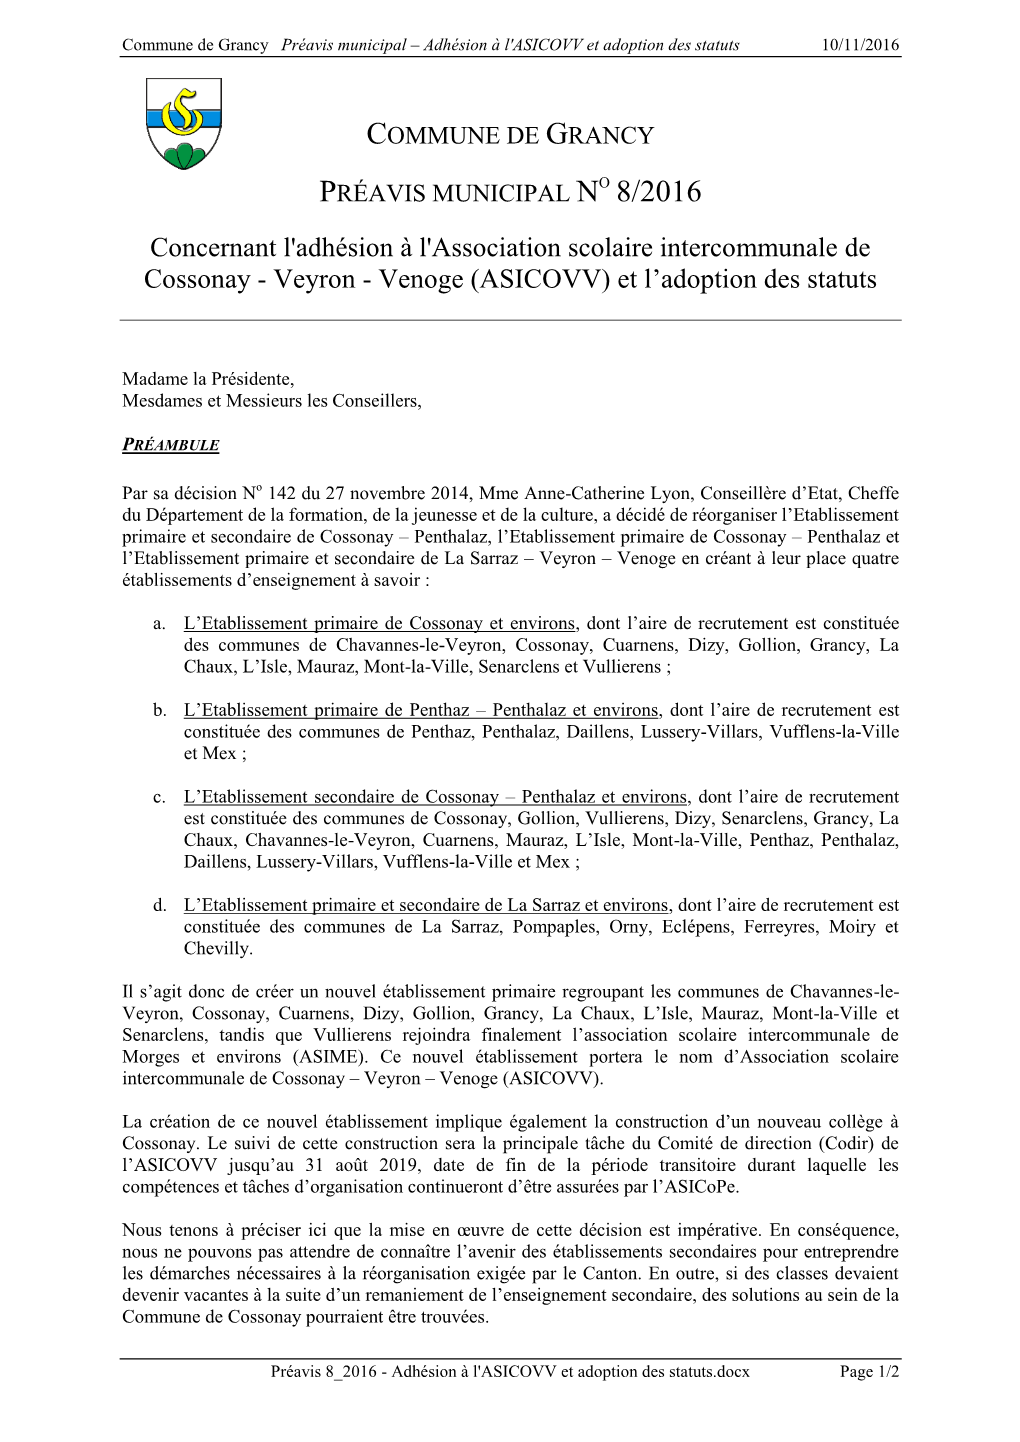 Concernant L'adhésion À L'association Scolaire Intercommunale De Cossonay - Veyron - Venoge (ASICOVV) Et L’Adoption Des Statuts